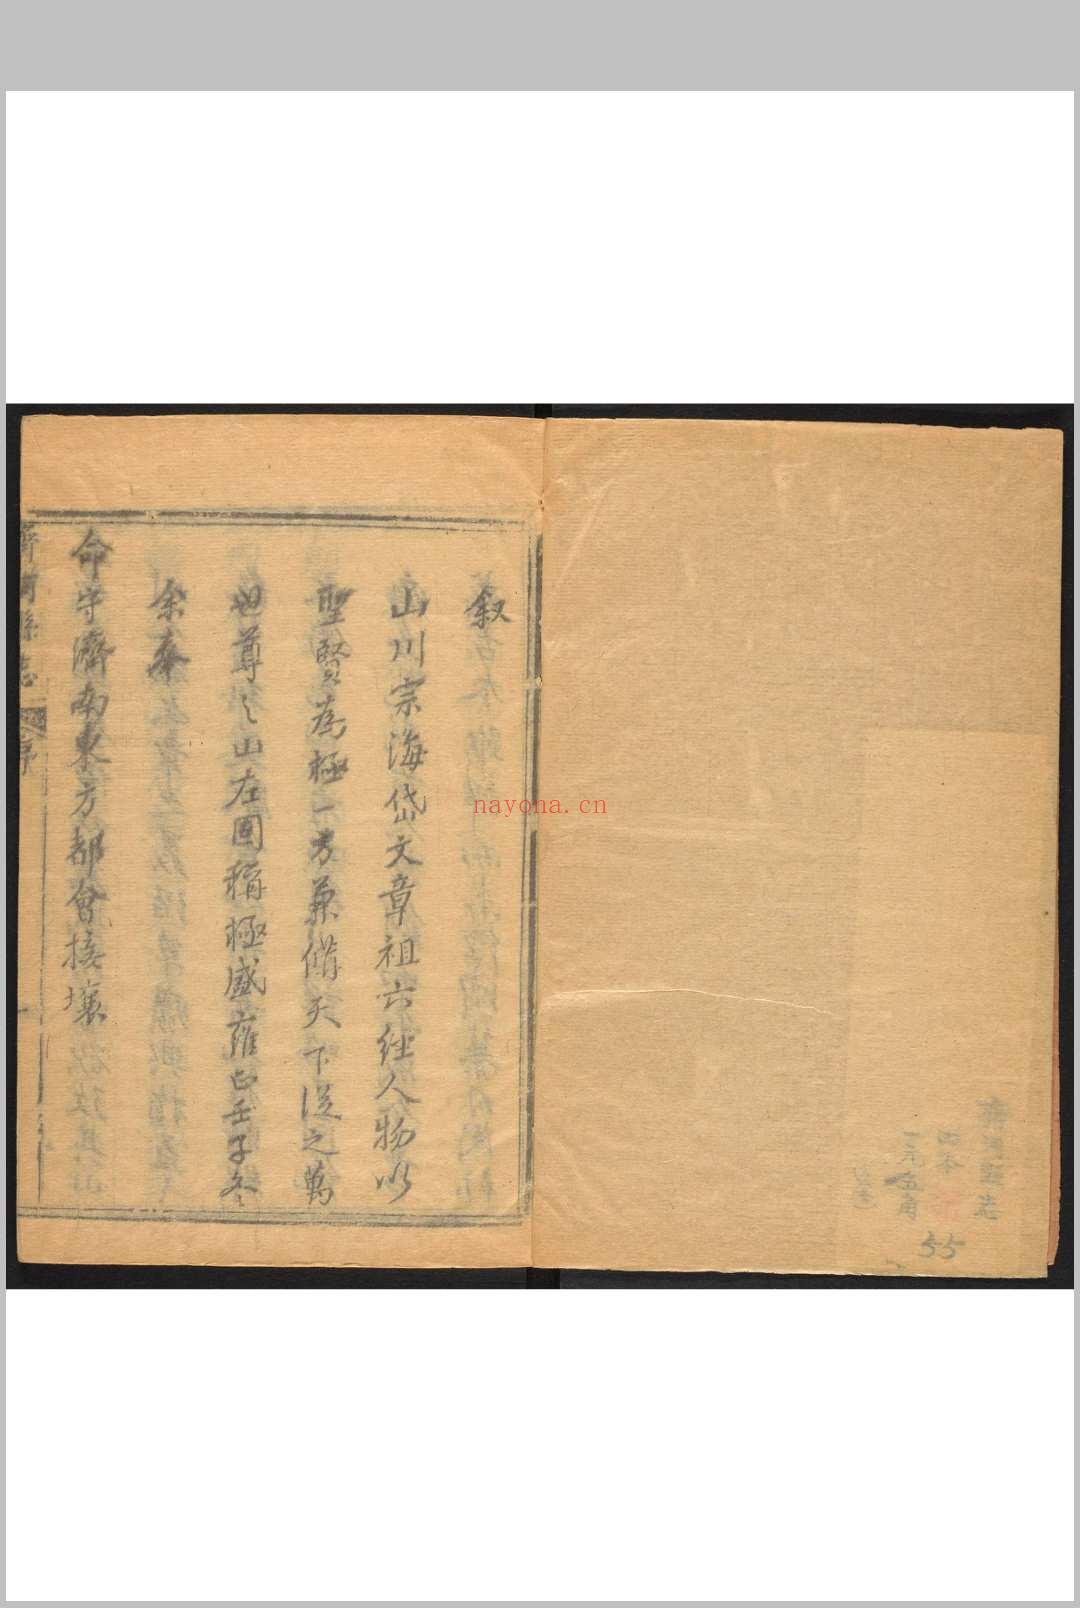 齐河县志  十卷 上官有仪修.清乾隆间, between 1736 and 1795]